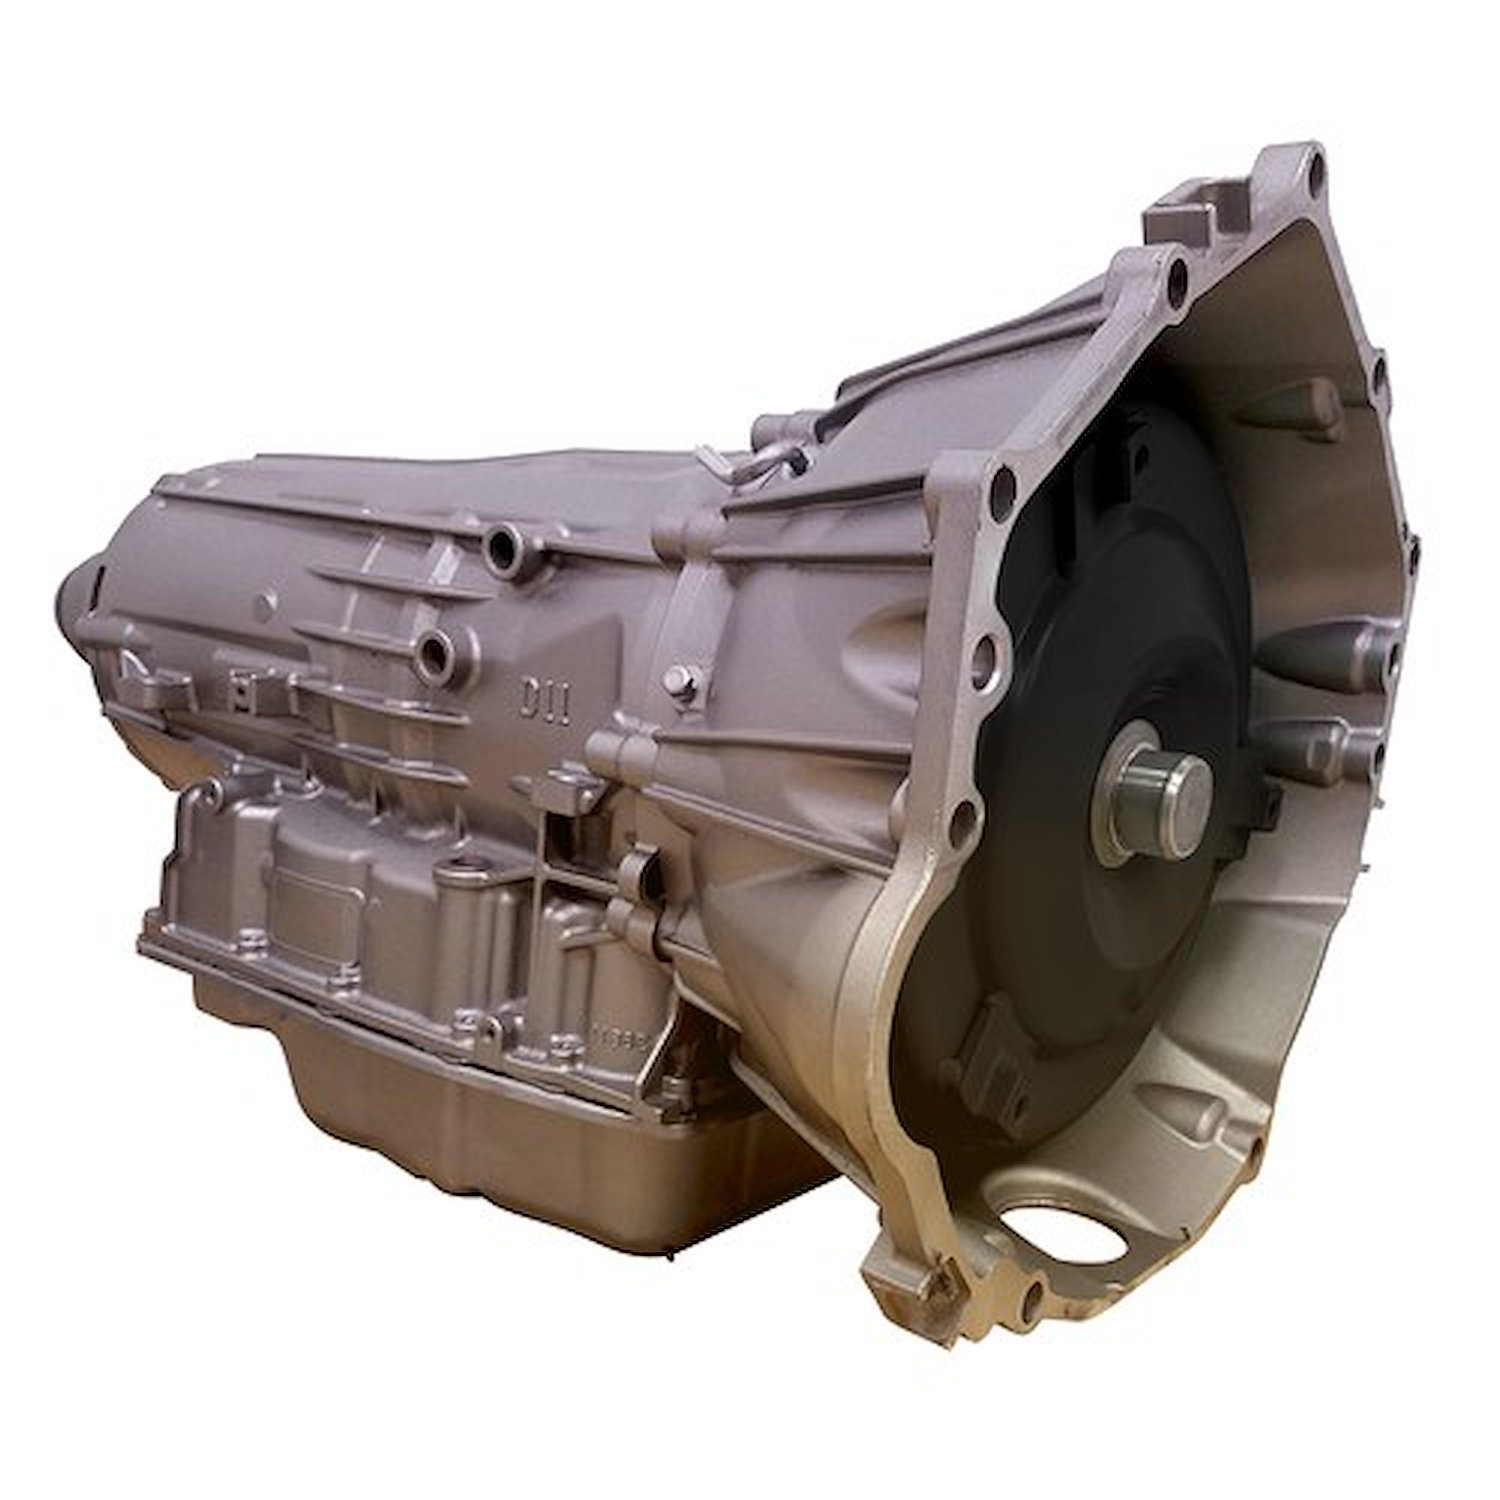 6L80 Reman Auto Trans Fits Select 2014-2020 Cadillac, Chevrolet & GMC Trucks & SUVs w/5.3L LS V8 Eng. [4WD]